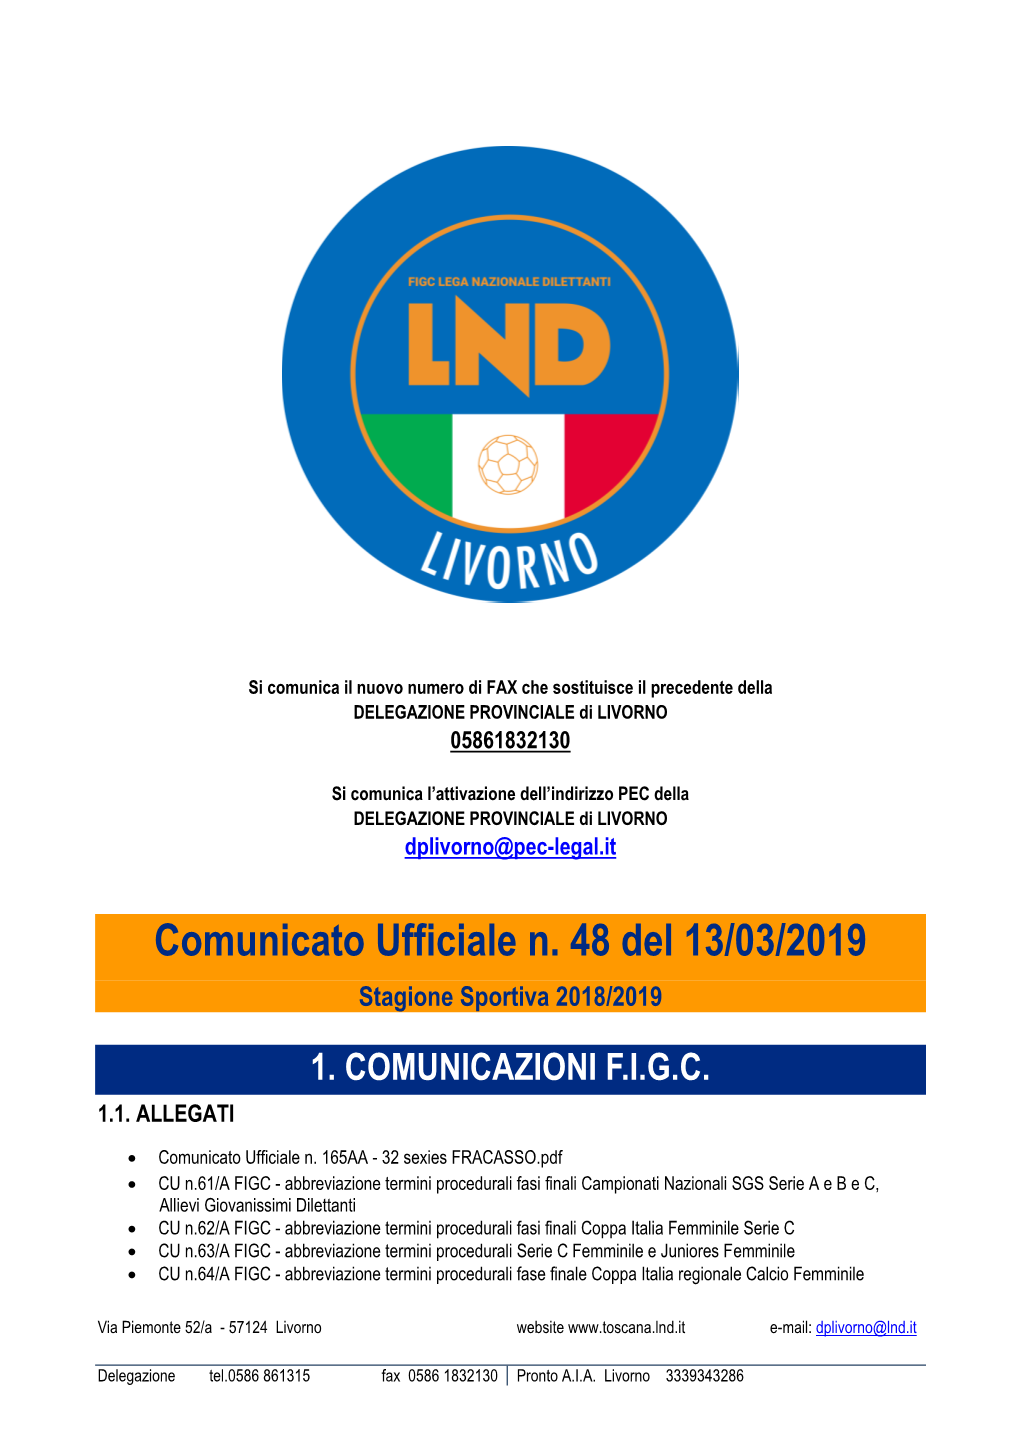 Comunicato Ufficiale N. 48 Del 13/03/2019